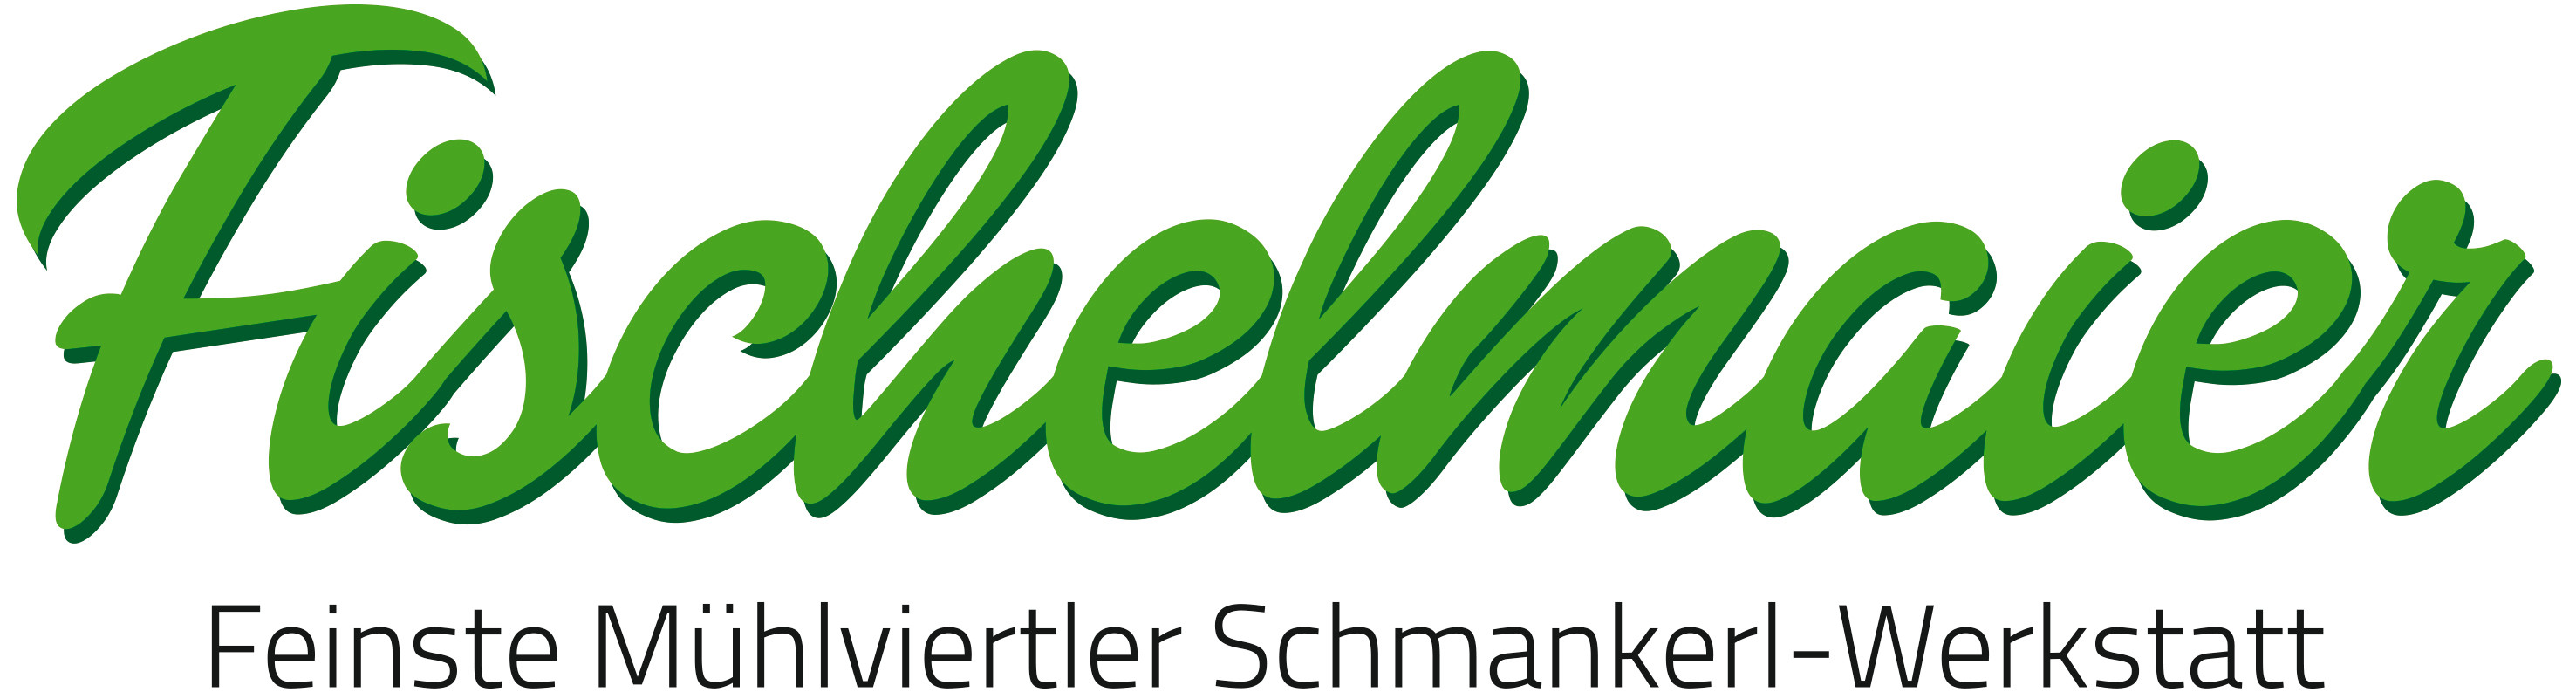 Logo Fischelmaier im .jpg-Format